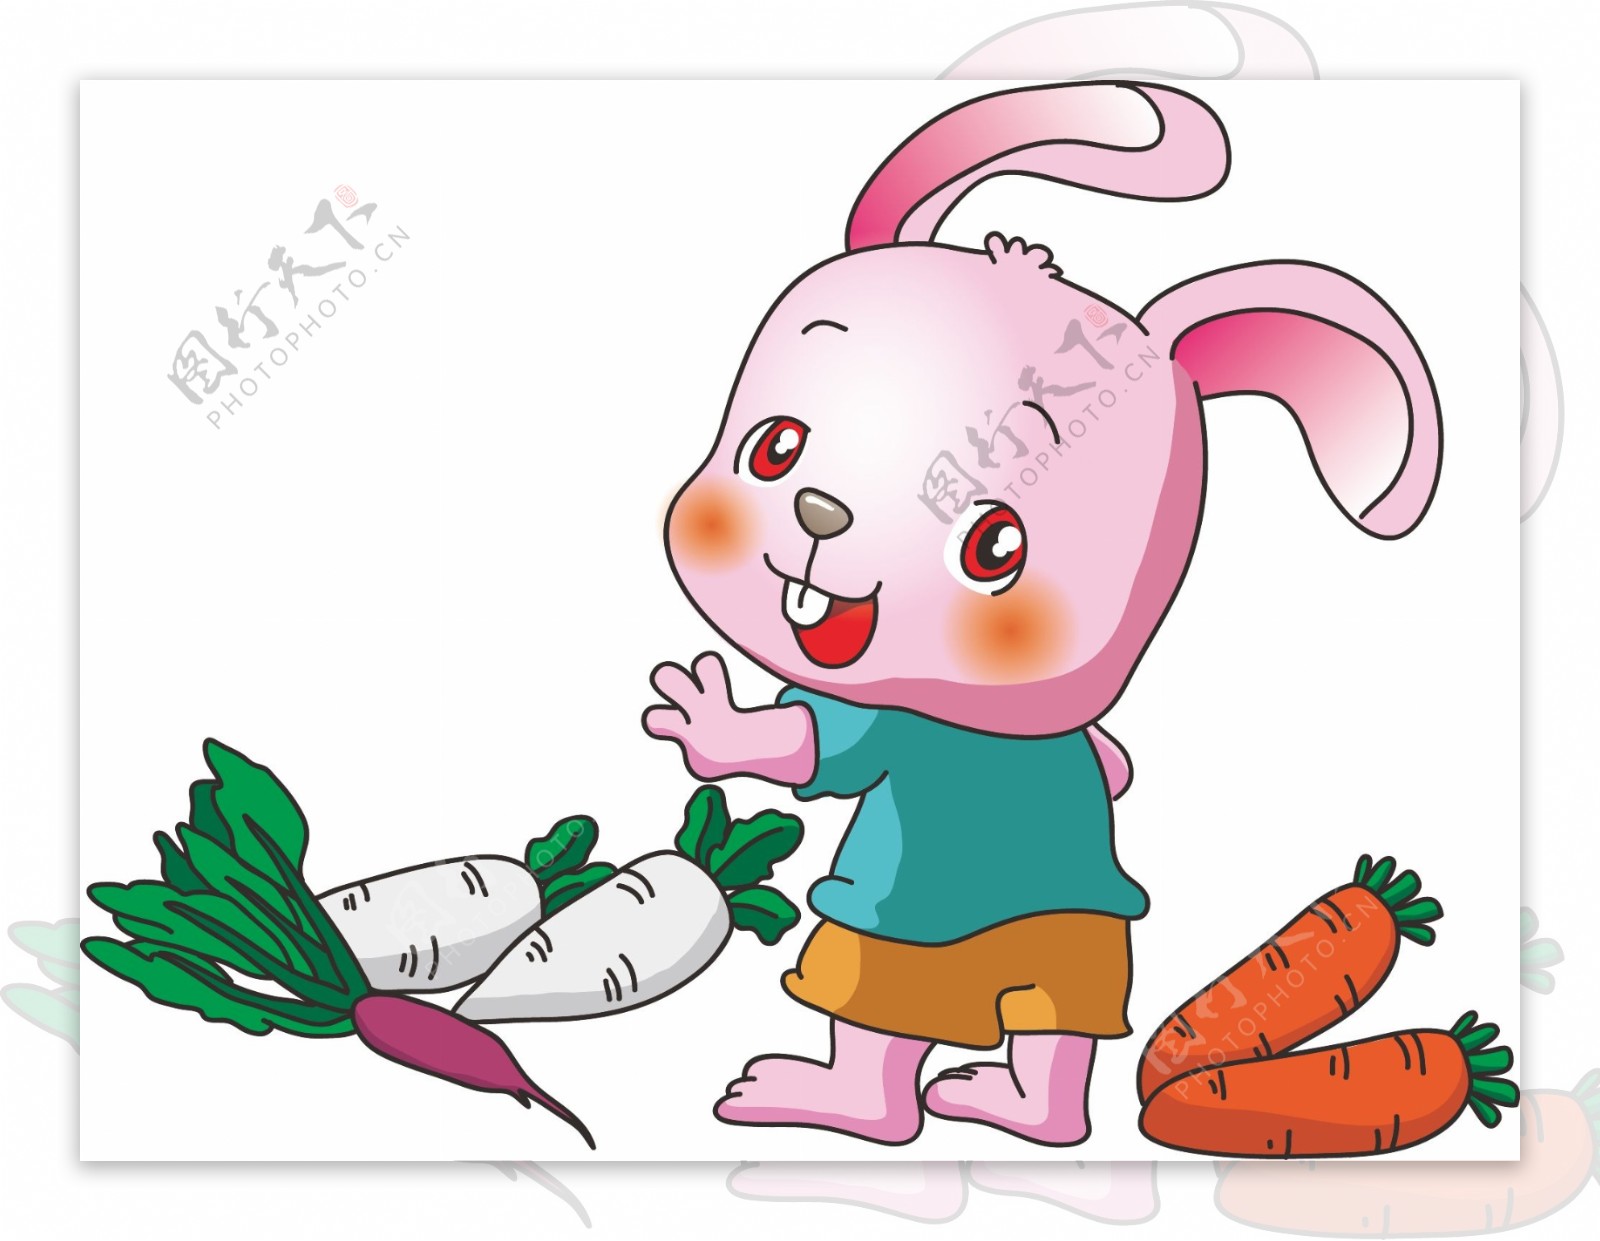 原创动物卡通系列兔子吃萝卜